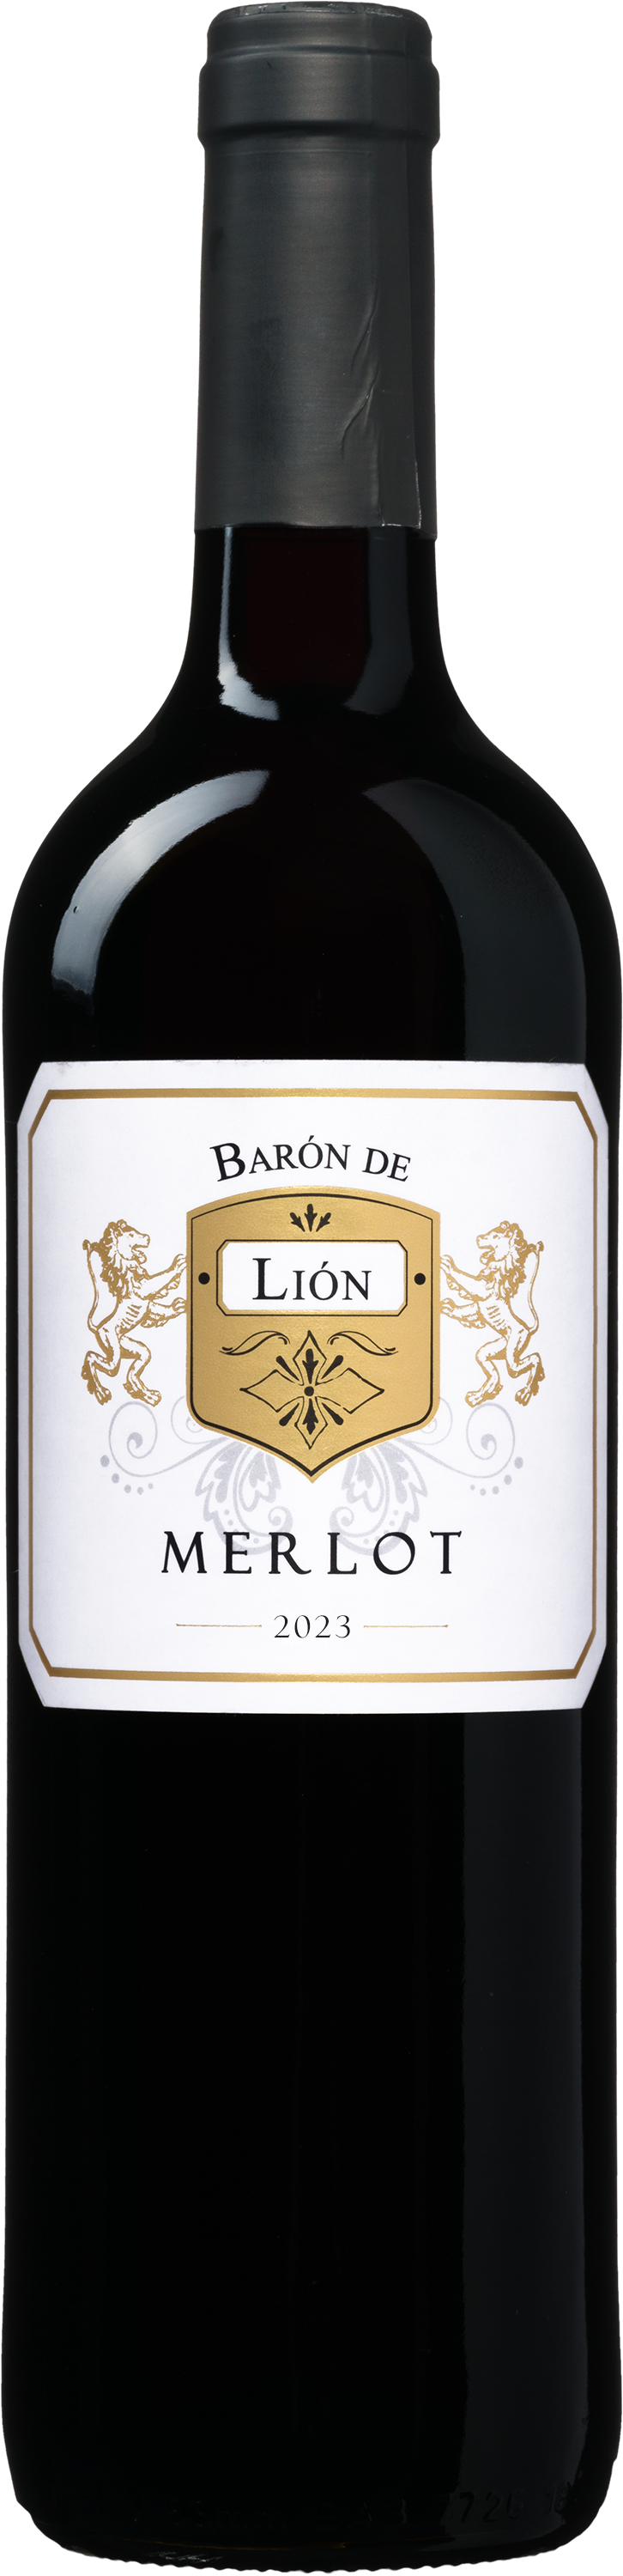 Wijnbeurs Barón de Lión Merlot